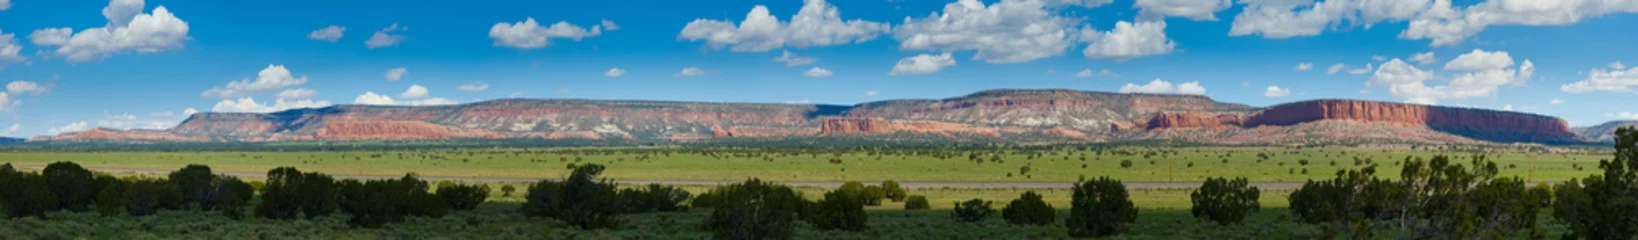 Fototapete Route 66 Rote Berge von Arizona - Panorama